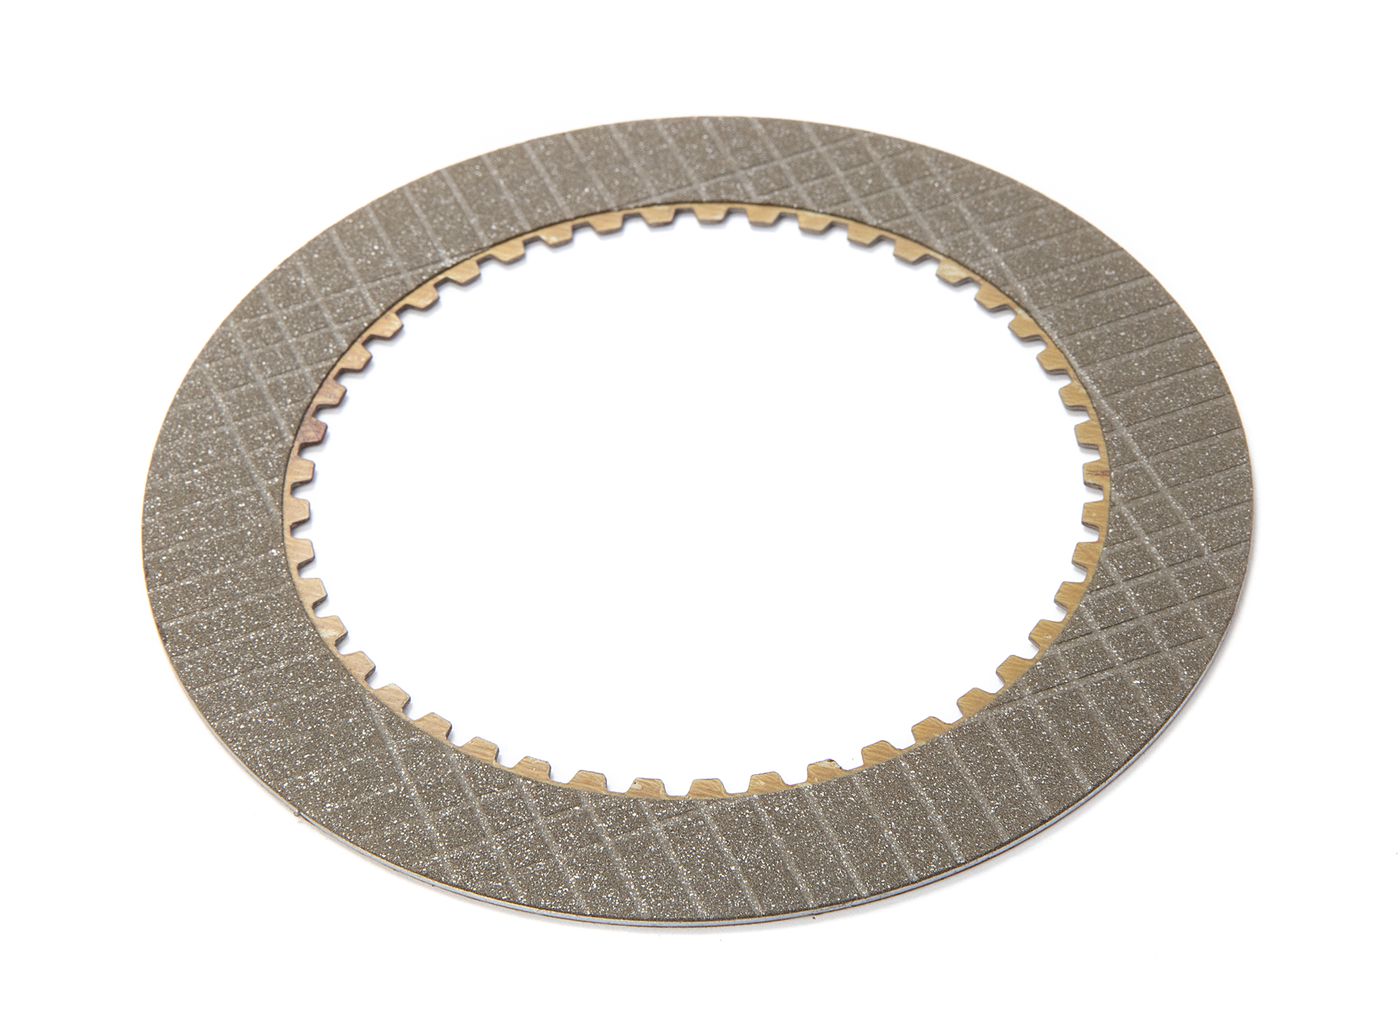 Kupplungsscheibe
Clutch plate
Disque d'embrayage
Tarcza sprzęg